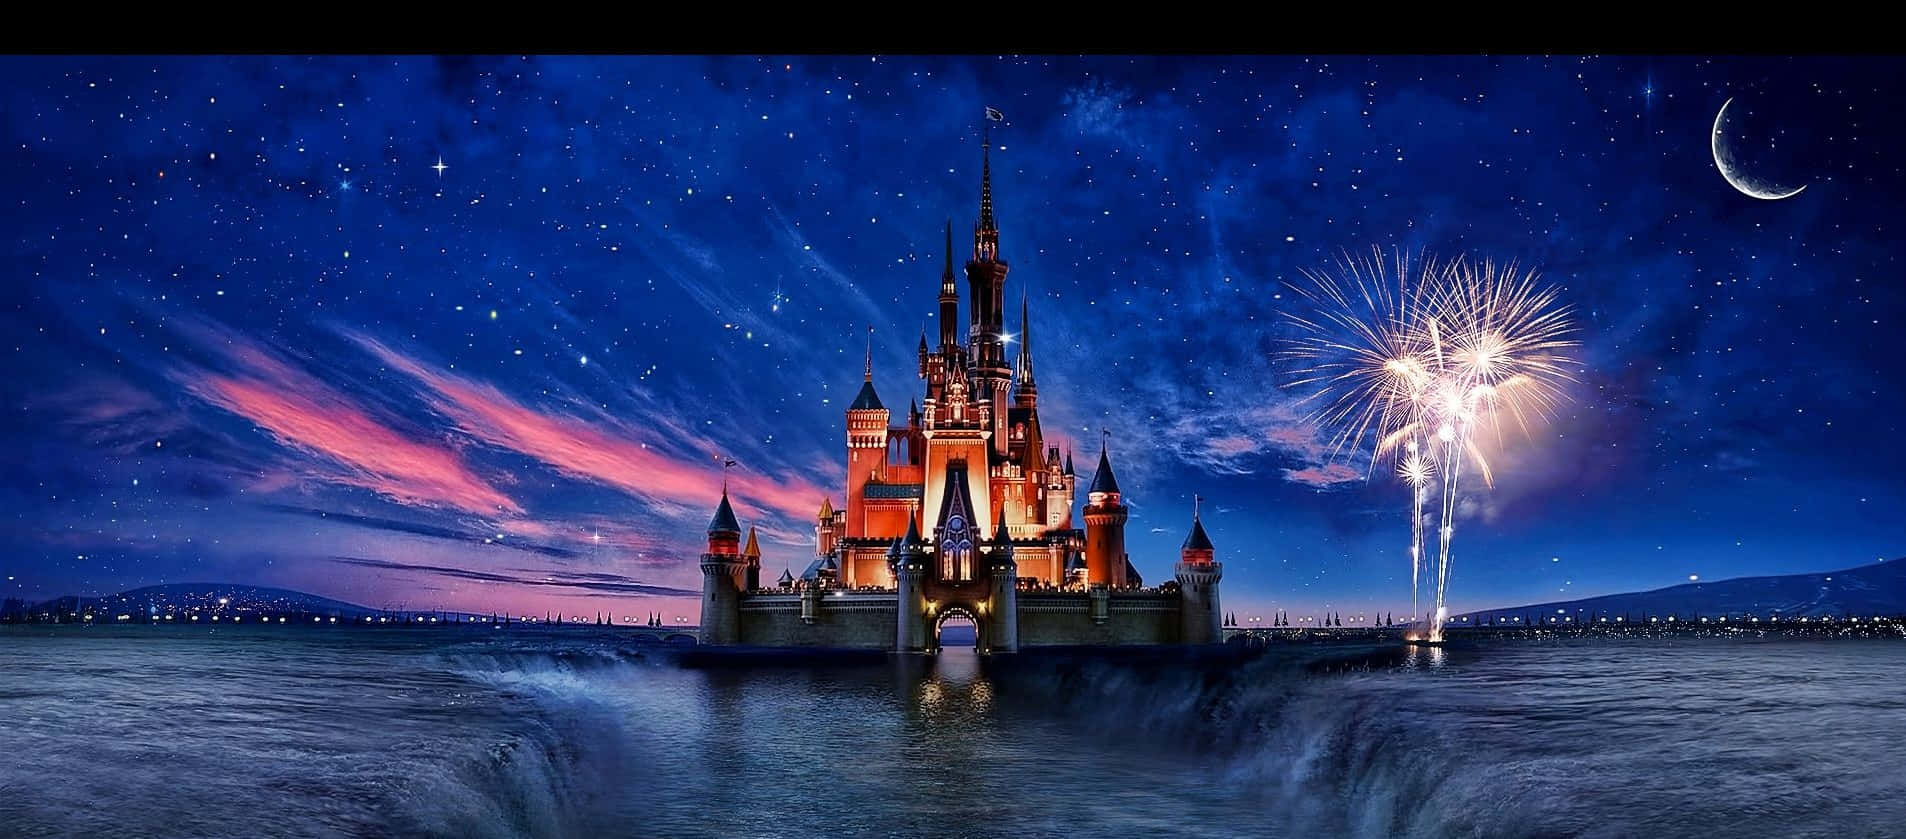 Förloradig I Disneyland-magi Med En Vy Över Det Ikoniska Slottet.